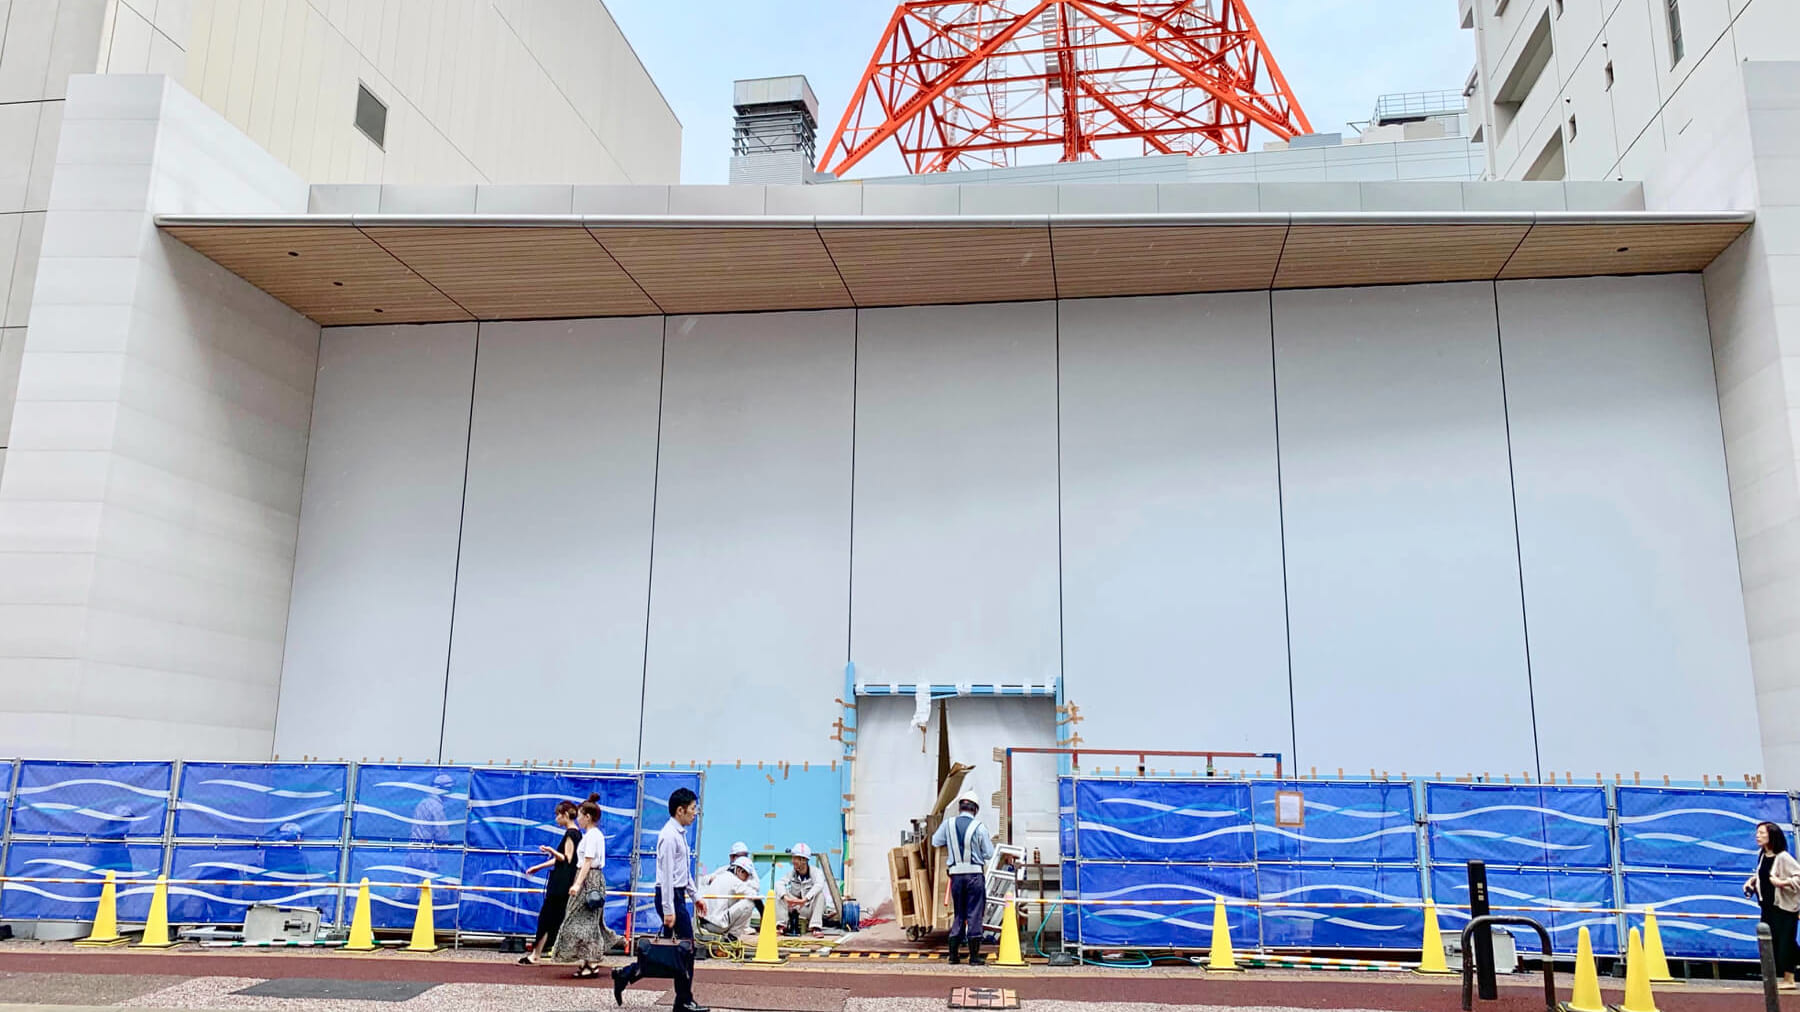 写真で見る「Apple 福岡天神」の移転先と噂される工事現場（2019年8月末）